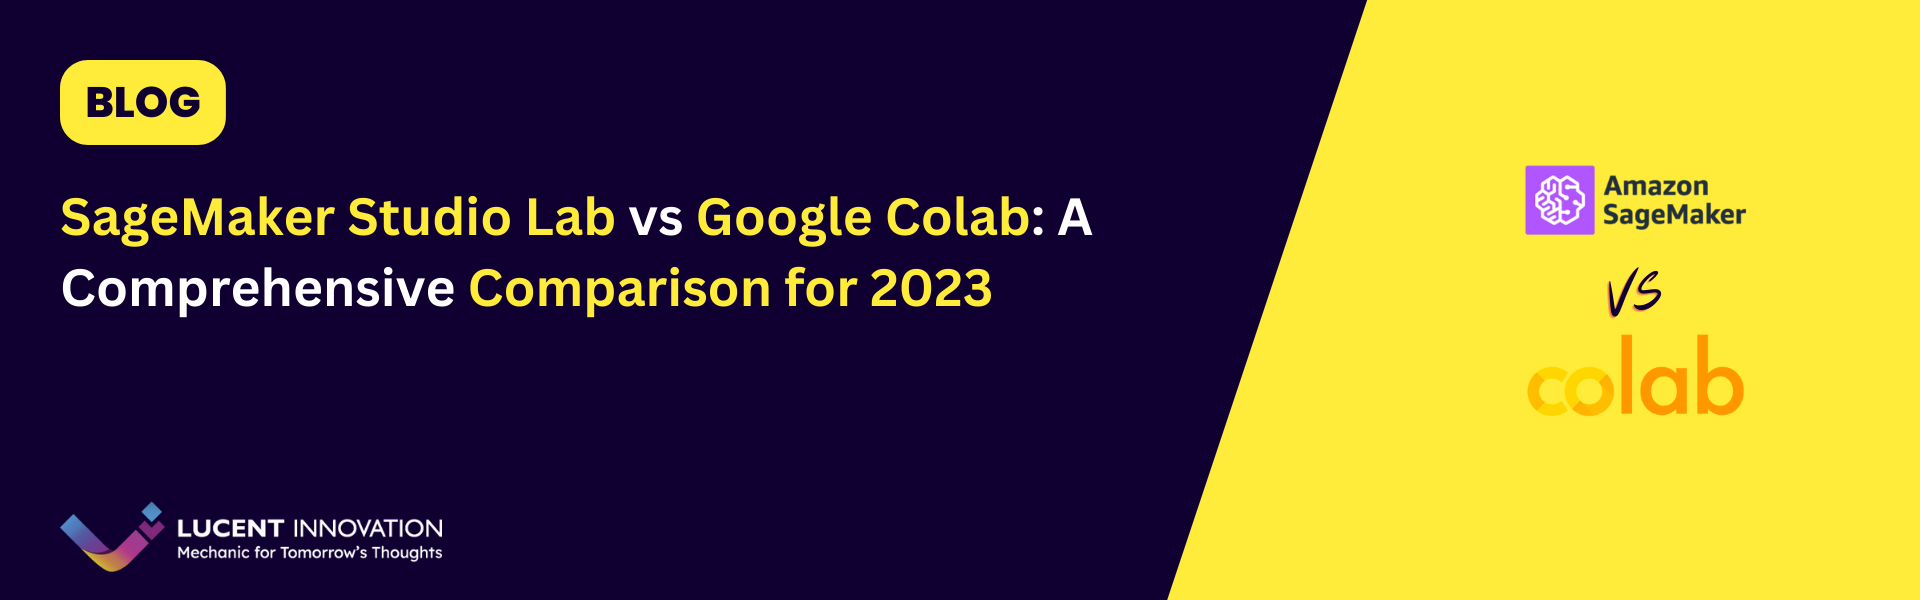 SageMaker Studio Lab vs Google Colab: A Comprehensive Comparison for 2023